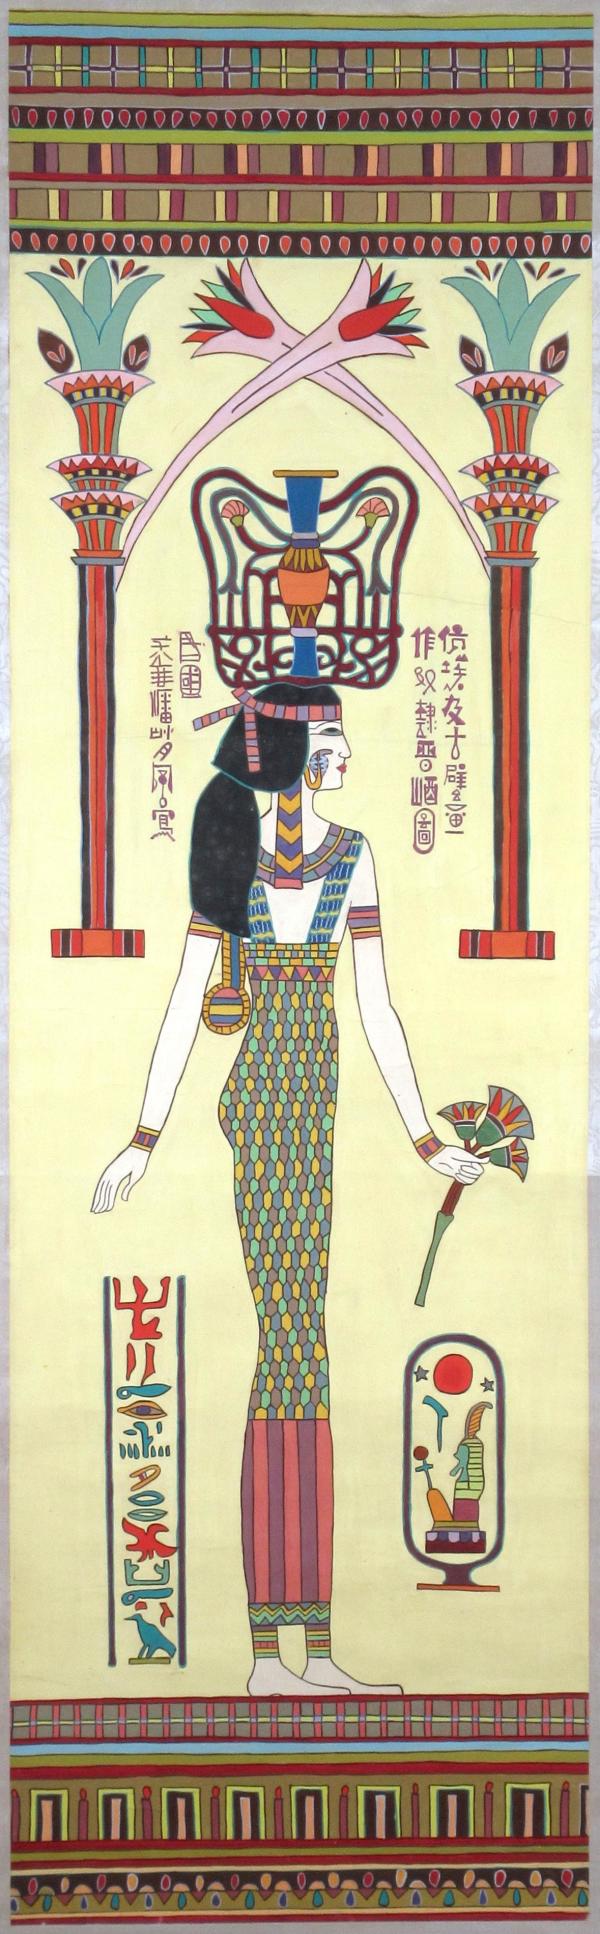 Egyptian Fresco #1 by Chiu Fung Poon